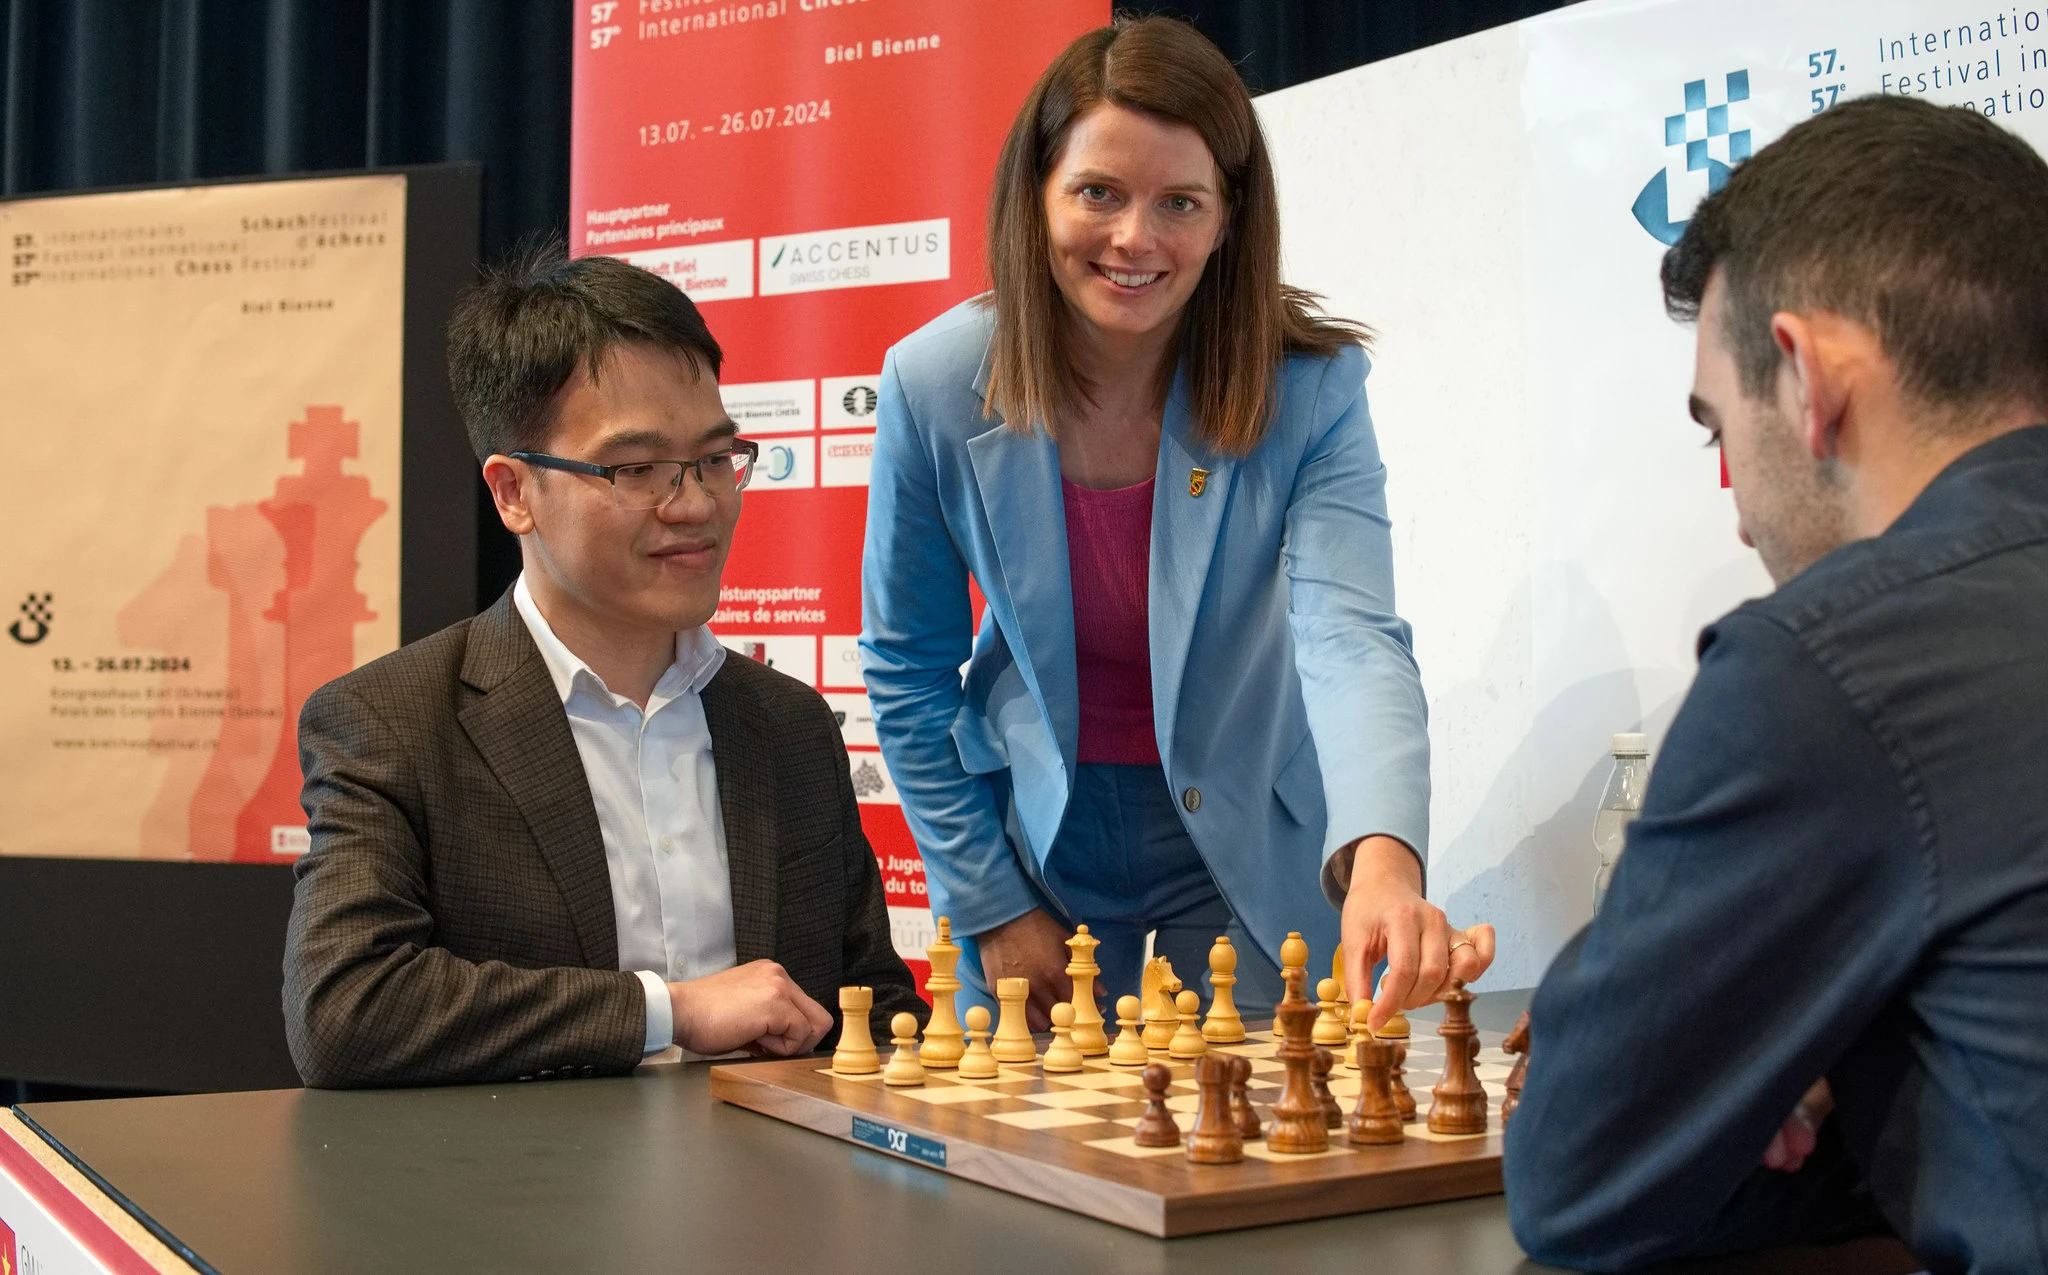 Lê Quang Liêm tạo kỳ tích lần thứ ba liên tiếp vô địch Festival cờ vua Biel